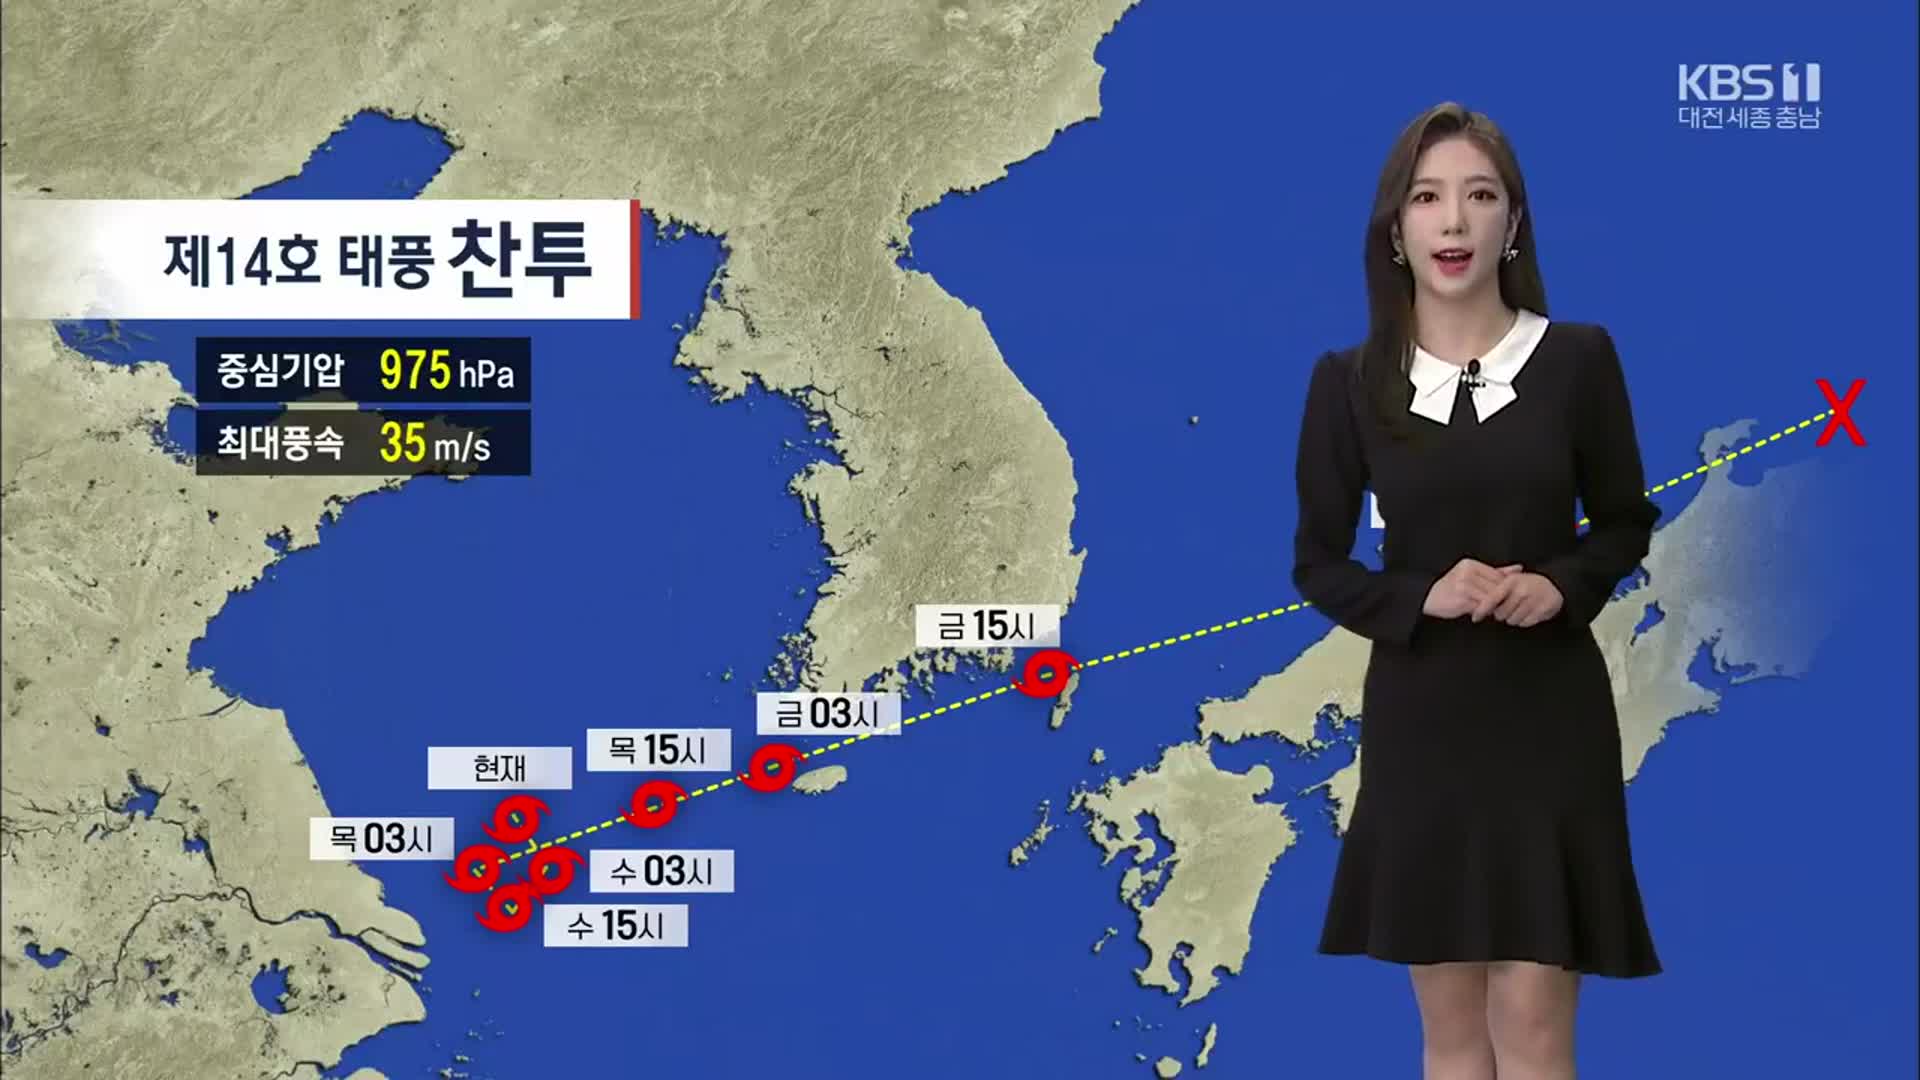 [날씨] 대전·세종·충남 태풍 영향으로 서해안 강한 바람 주의